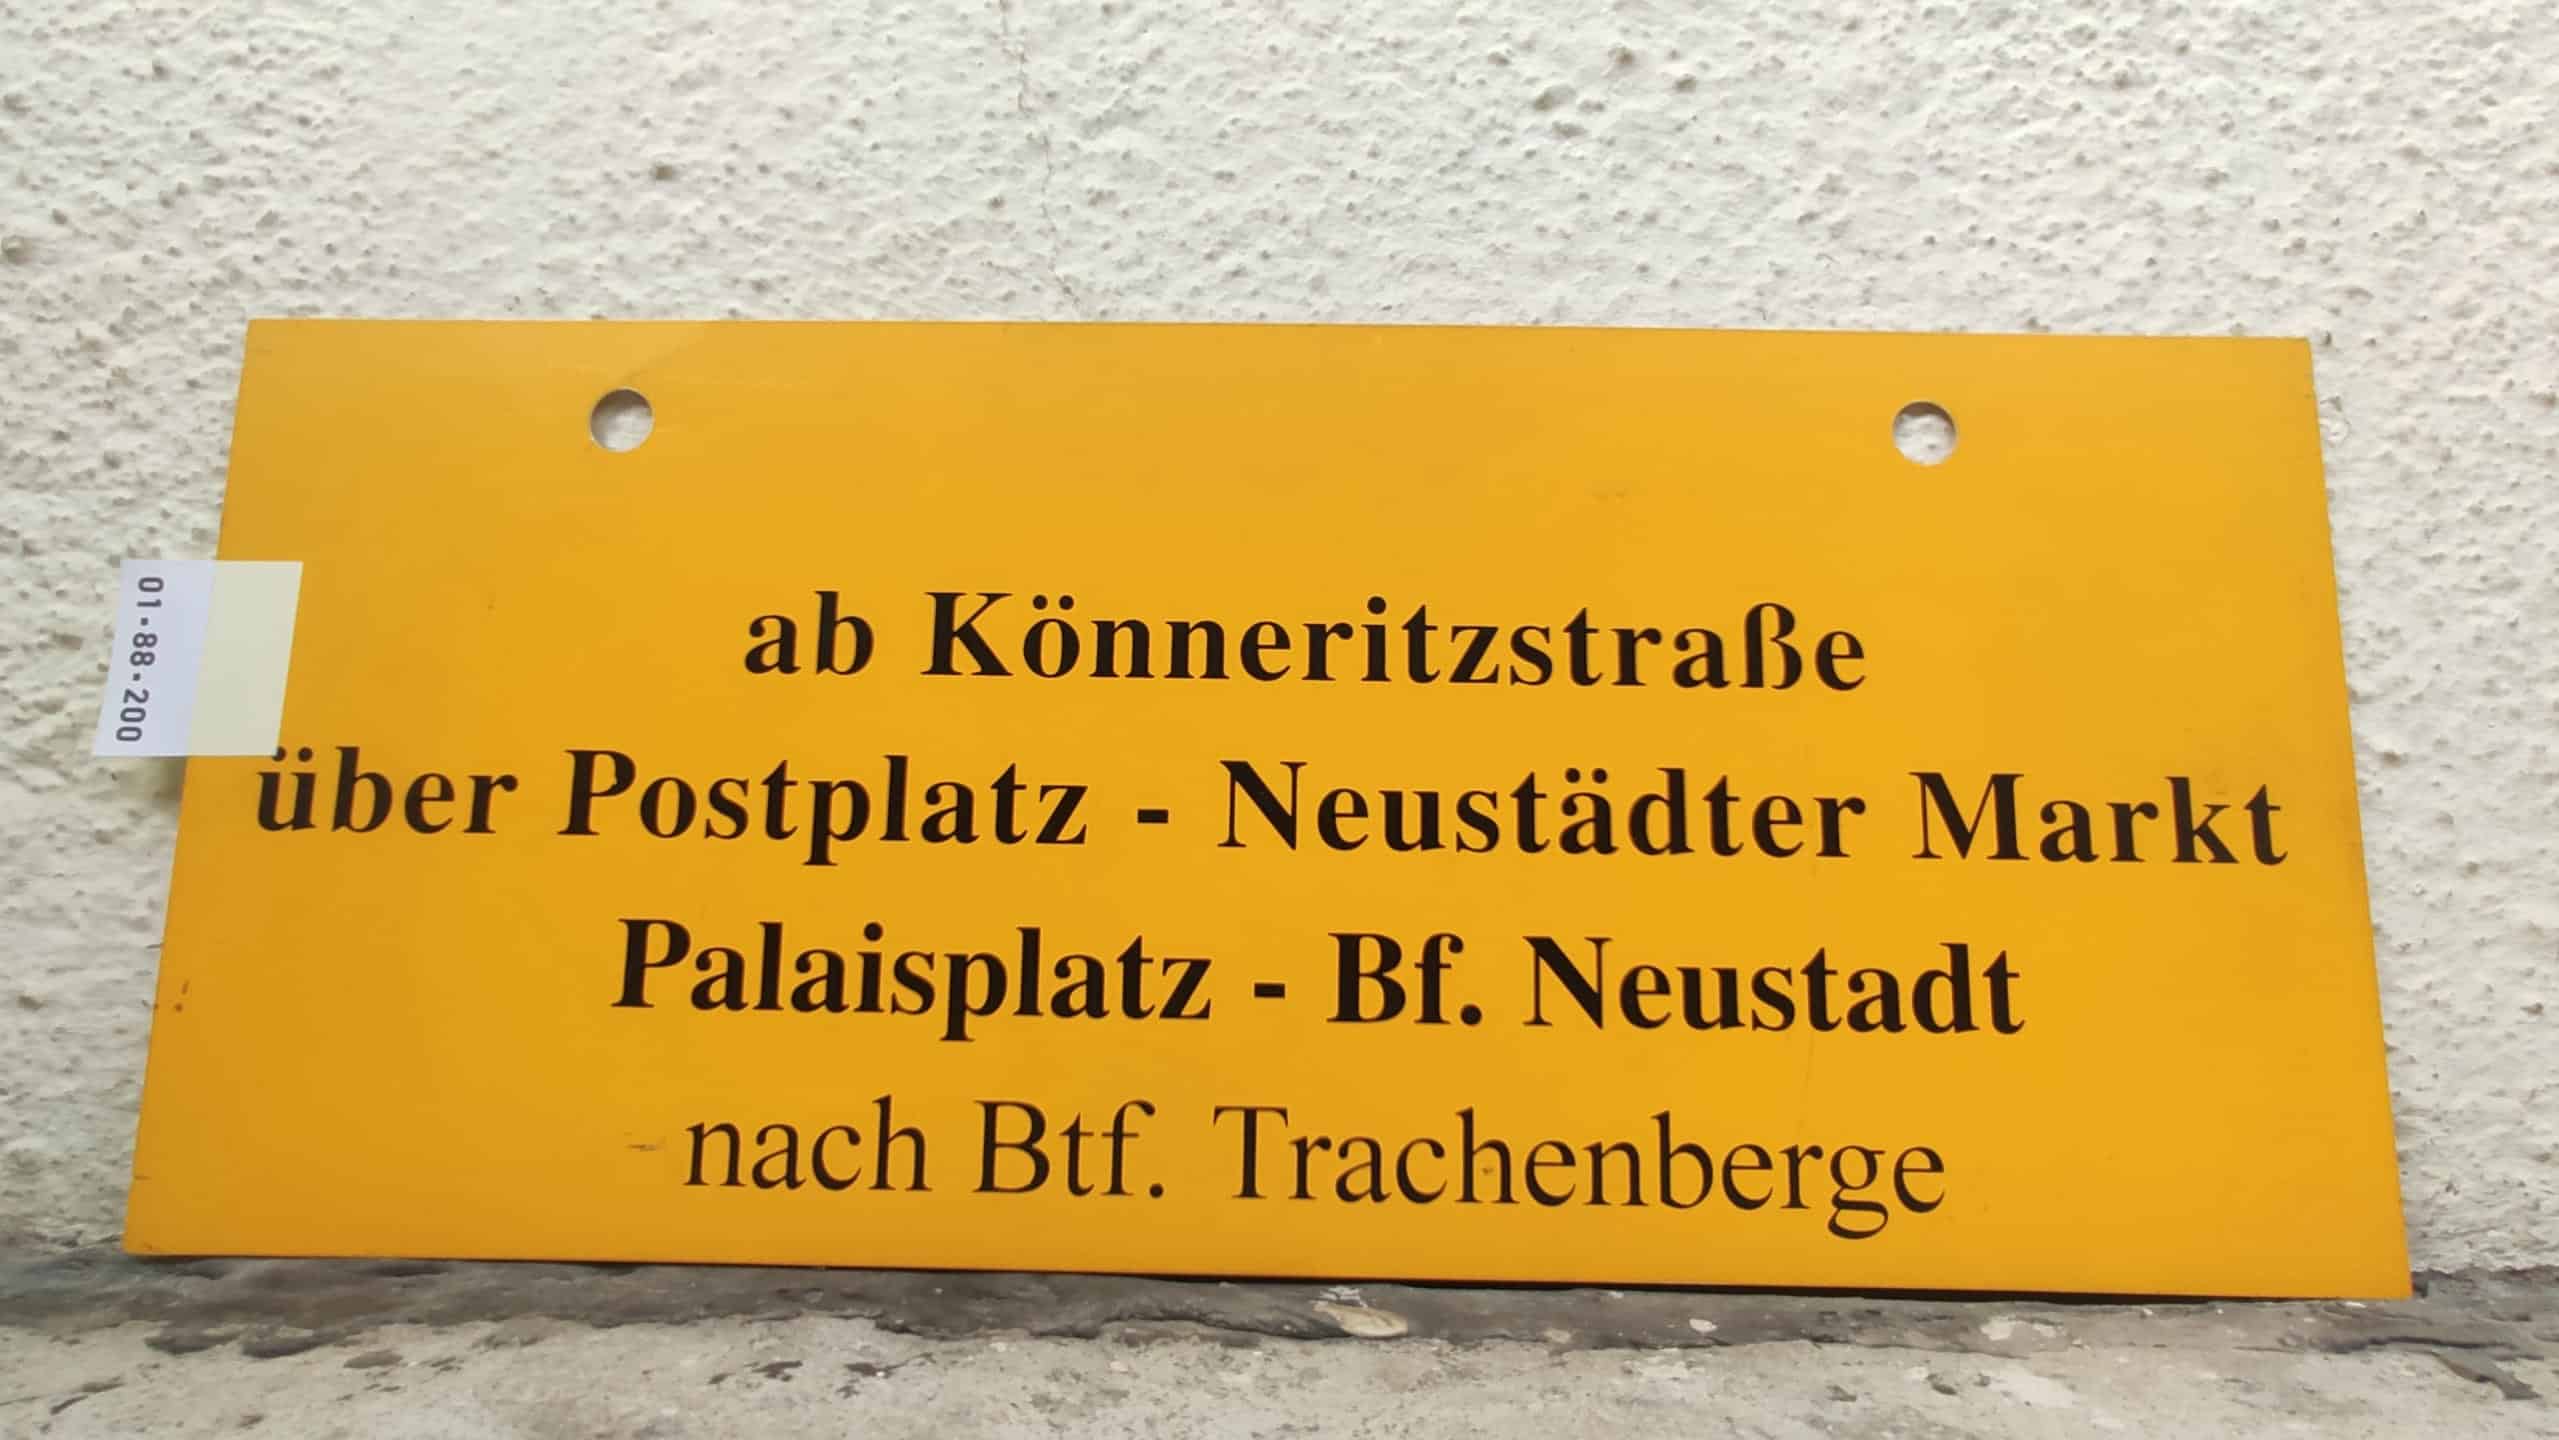 ab Könneritzstraße über Postplatz - Neustädter Markt Palaisplatz - Bf. Neustadt nach Btf. Trachenberge